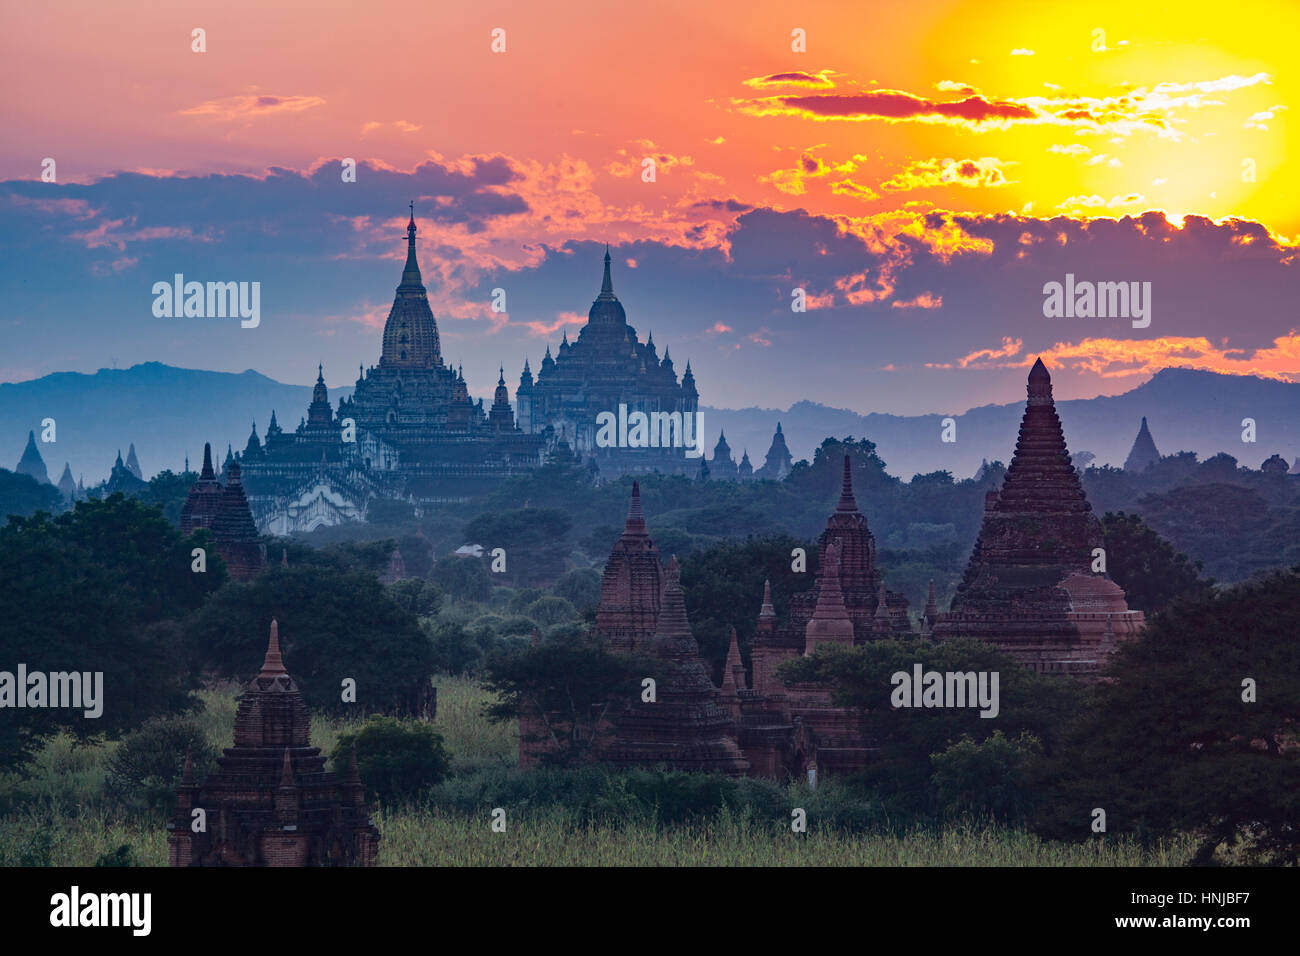 Tempel bei Sonnenuntergang. Bagan archäologische Zone, Myanmar Gelände 5.000 buddhistischen Tempel gebaut zwischen 11. und 13. Jahrhundert, Standort der ursprünglichen Hauptstadt von Stockfoto